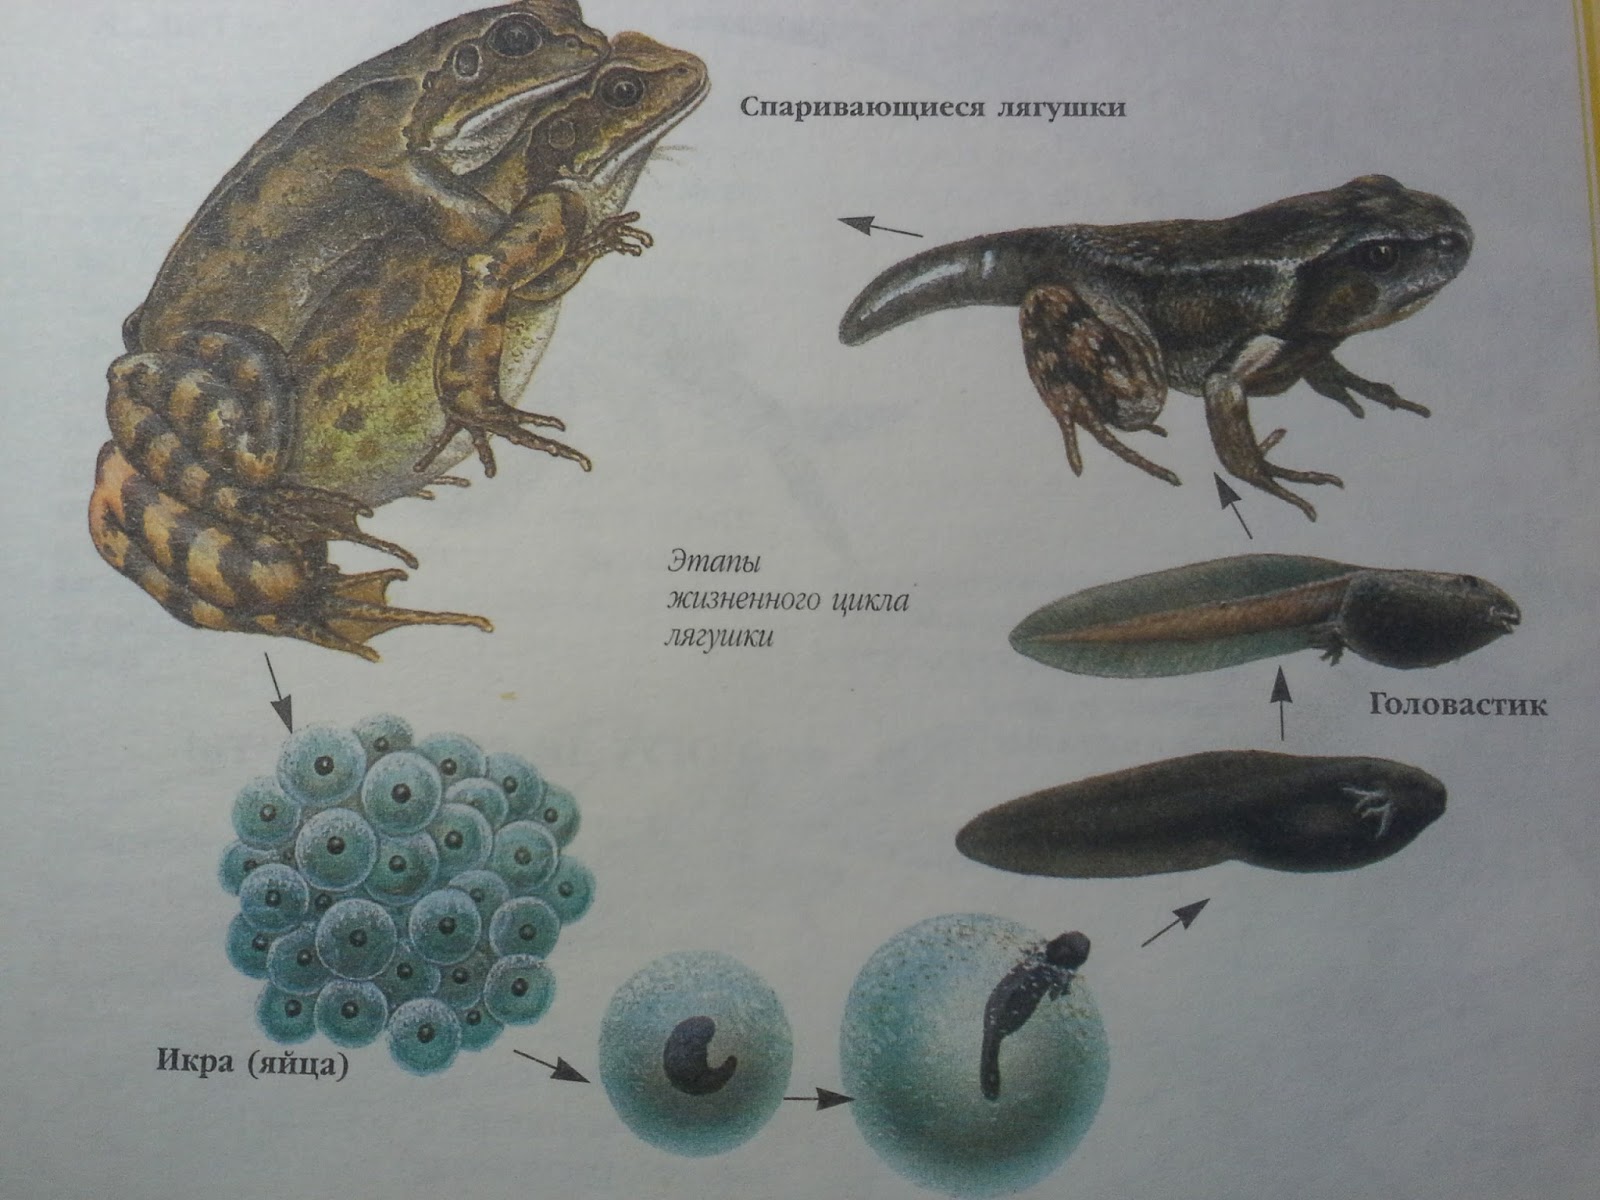 Развитие головастика земноводных. Эволюция лягушки из головастика. Последовательность развития головастика лягушки. Стадии развития головастика лягушки. От головастика до лягушки.